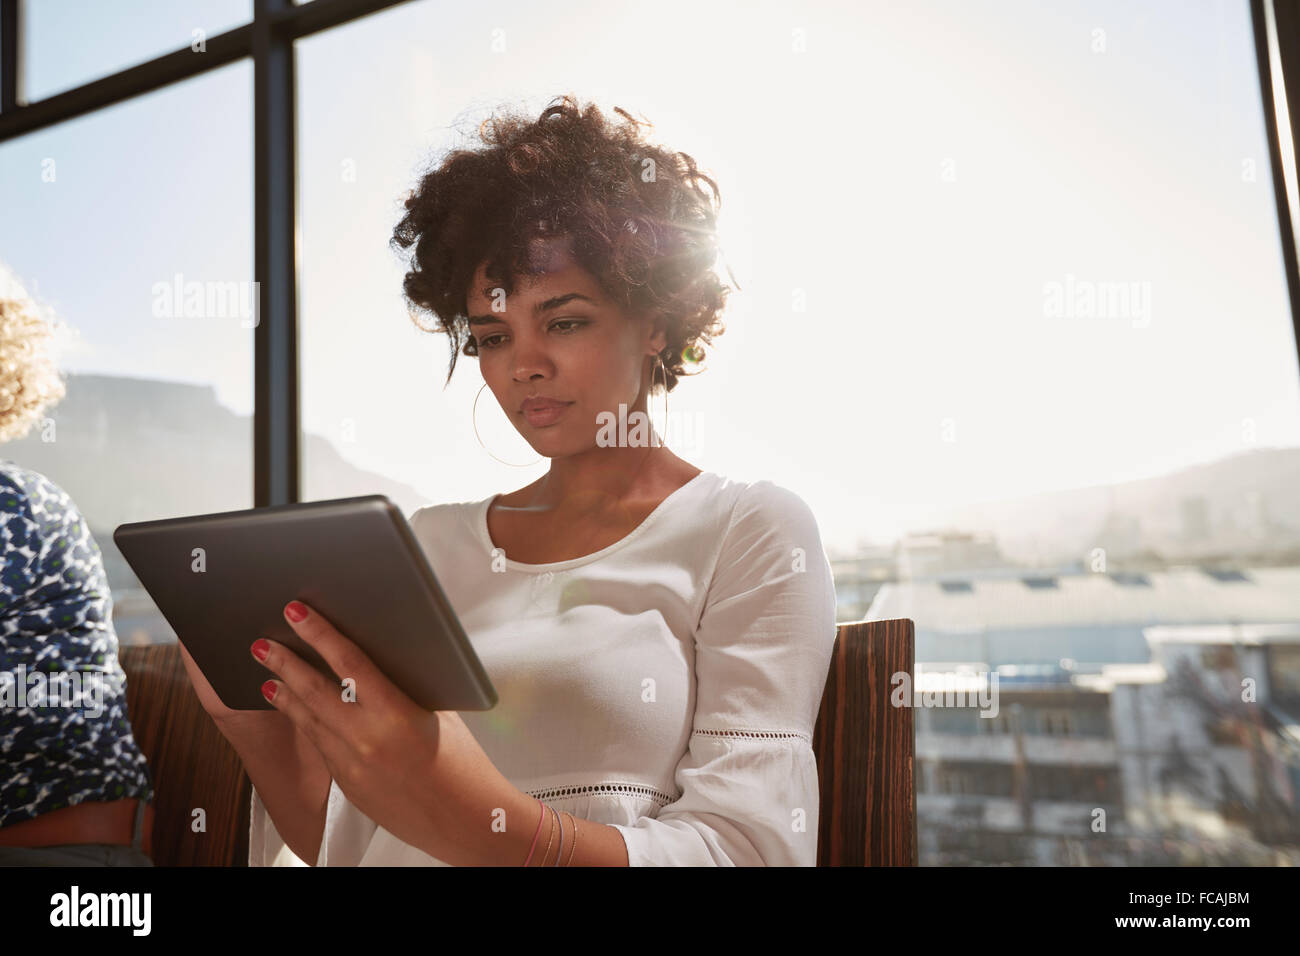 Portrait de jeune femme en train de travailler sur tablette numérique sur une journée ensoleillée. Belle femme africaine surf sur internet tablet compu Banque D'Images